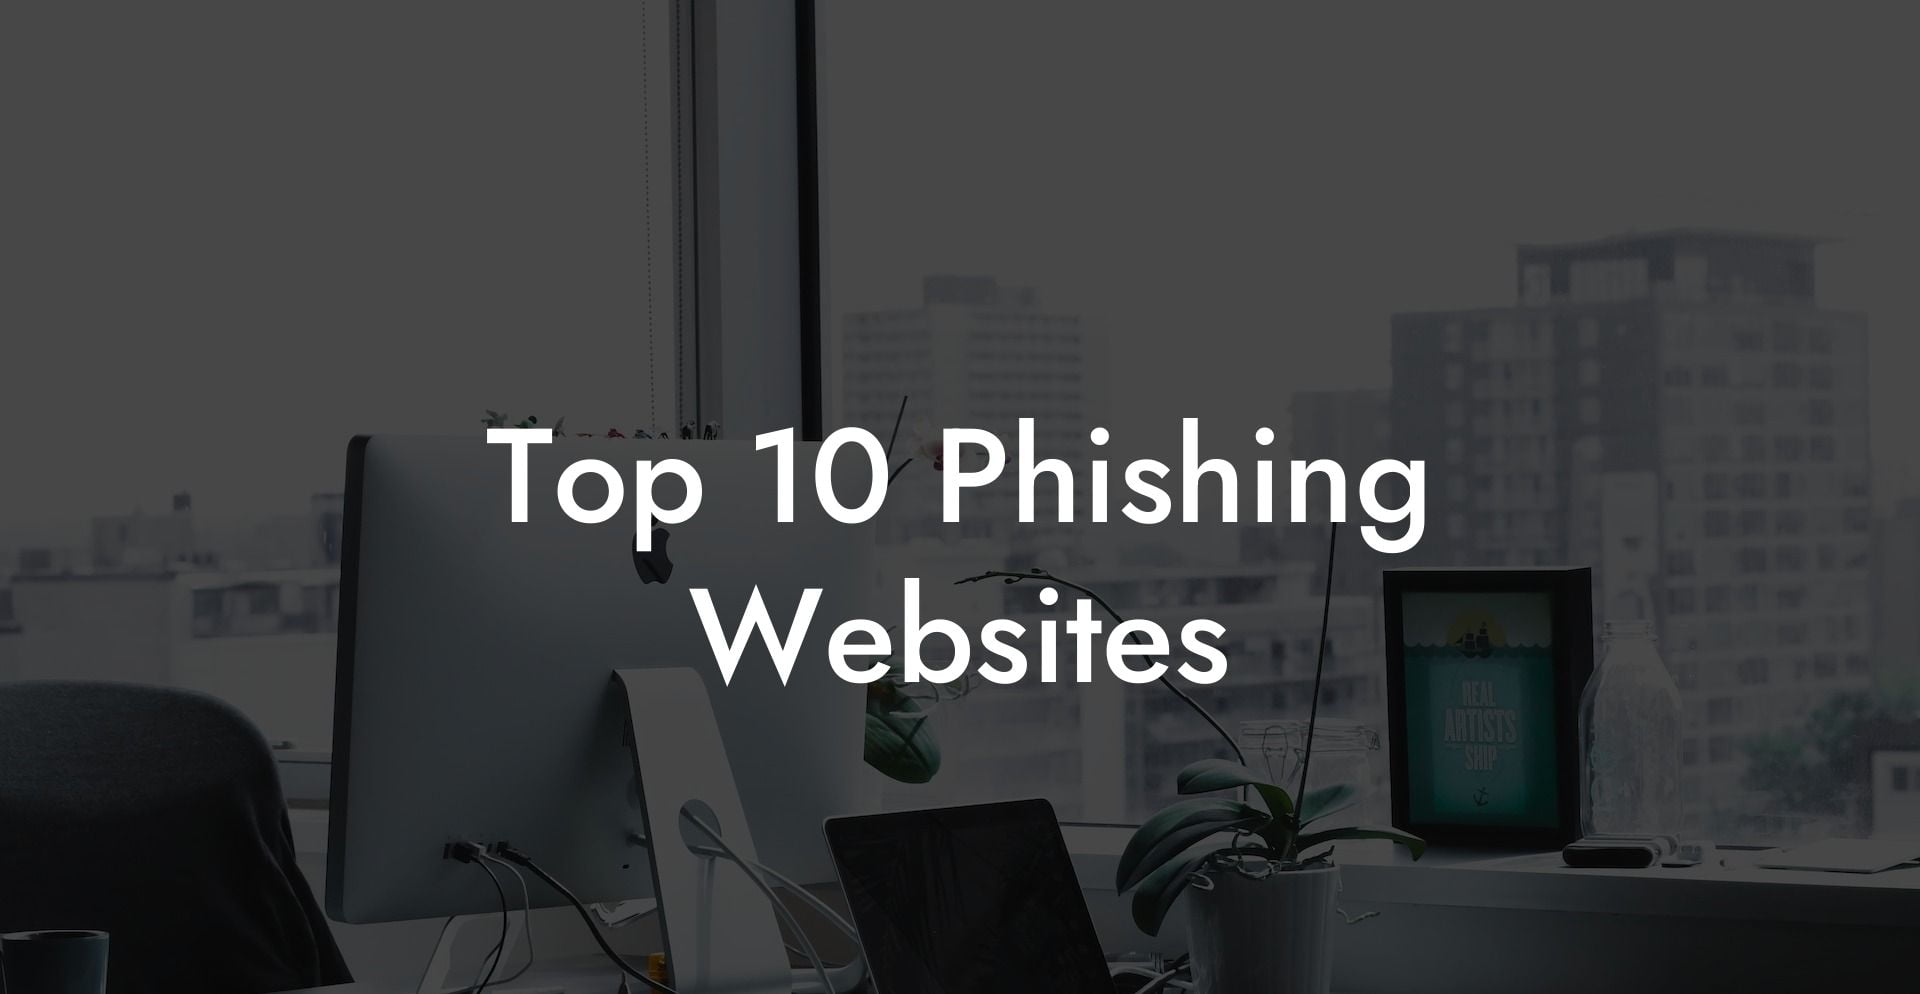 Top 10 Phishing Websites